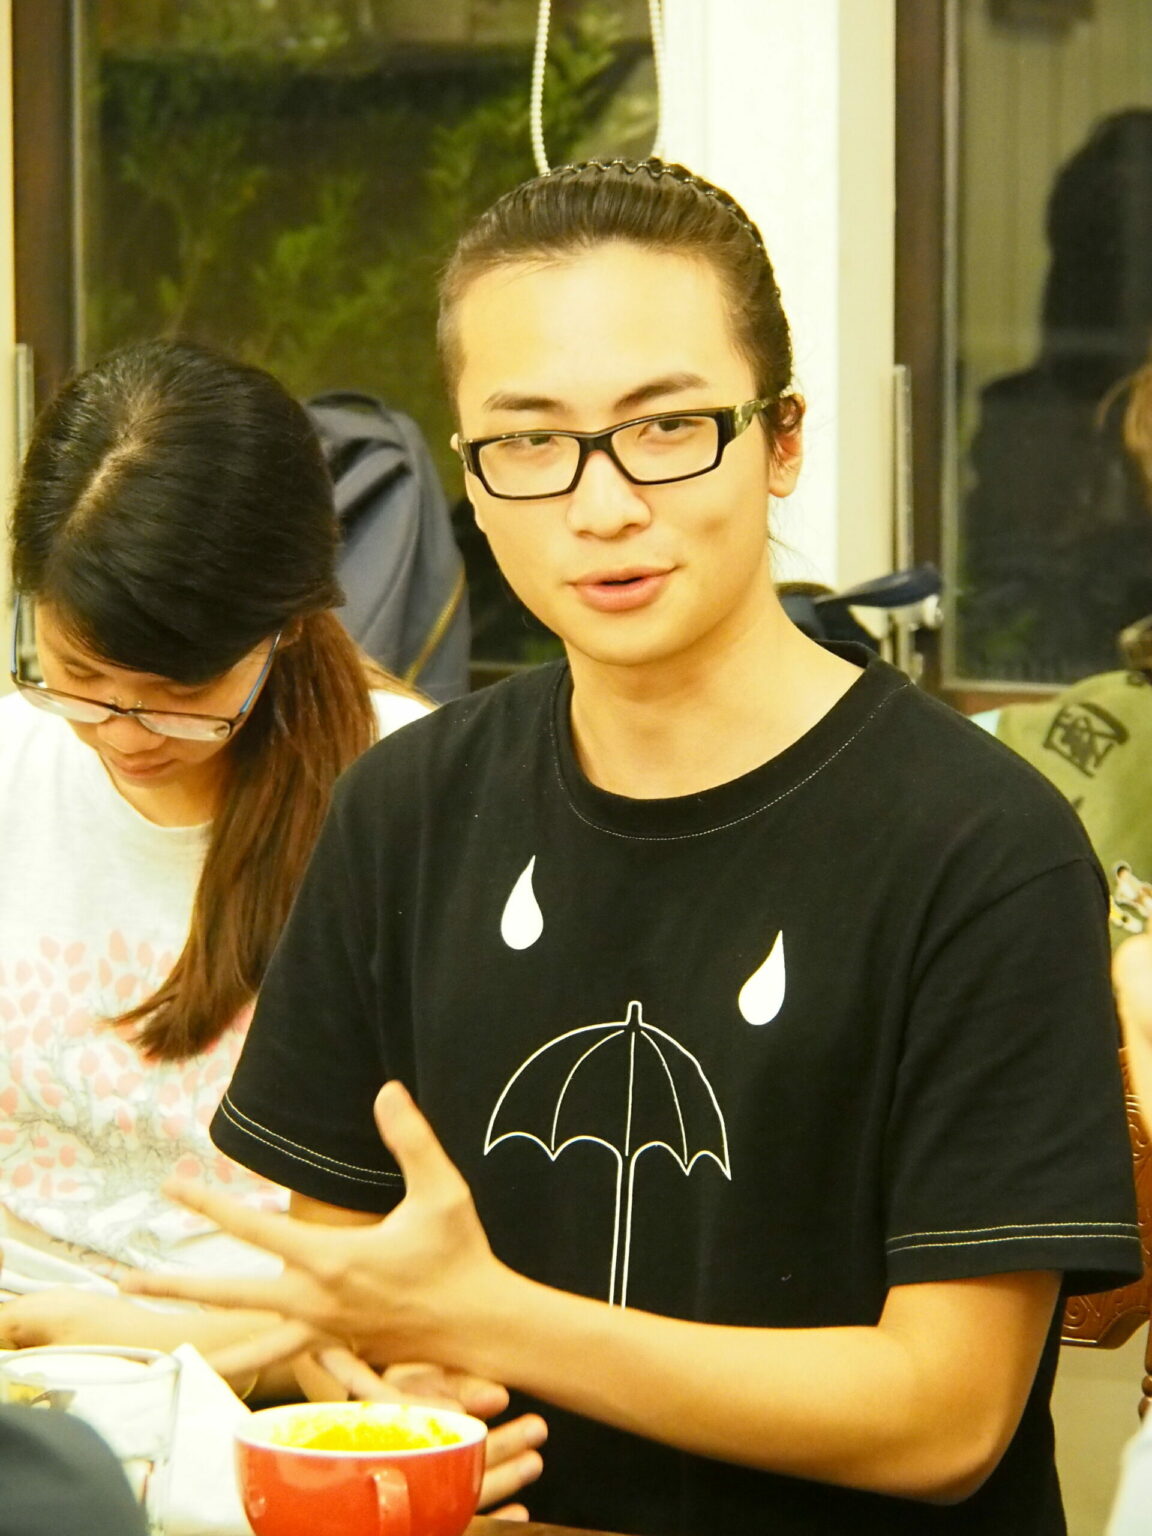 Die Vorderseite von James’ T-Shirt zeigt einen Schirm, das Symbol ihrer Bewegung. Dieser stehe dafür, dass Taiwan „von illegalen Vorgängen in der Regierung überschattet werde“, erklärt er. Foto: Sonja Blaschke